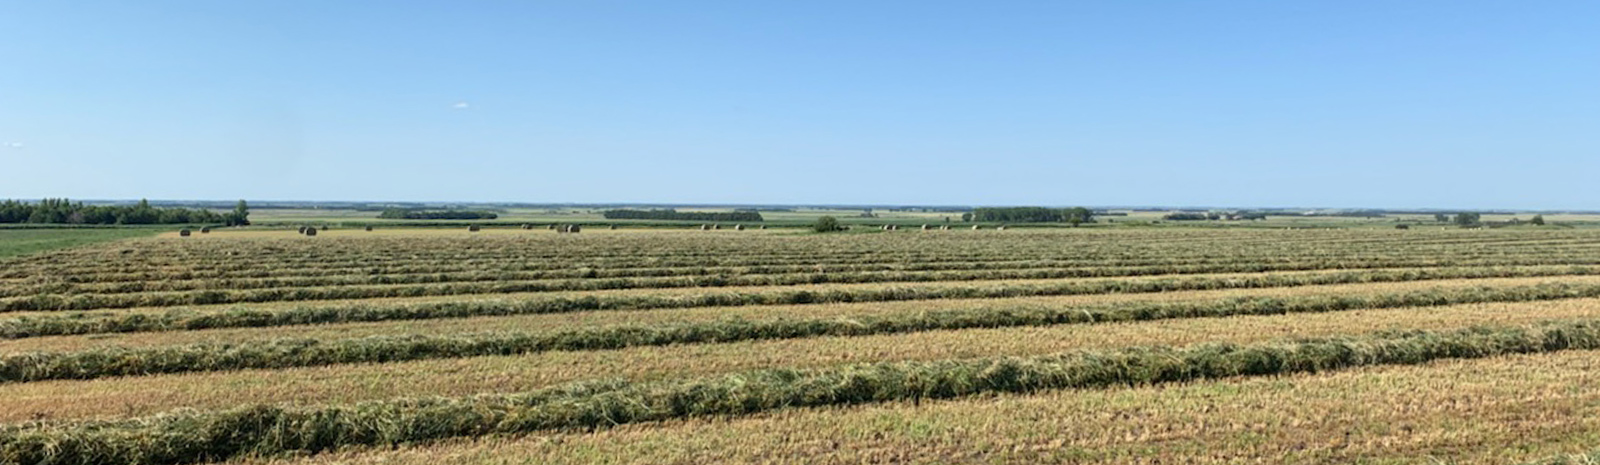 Swaths of hay in field.